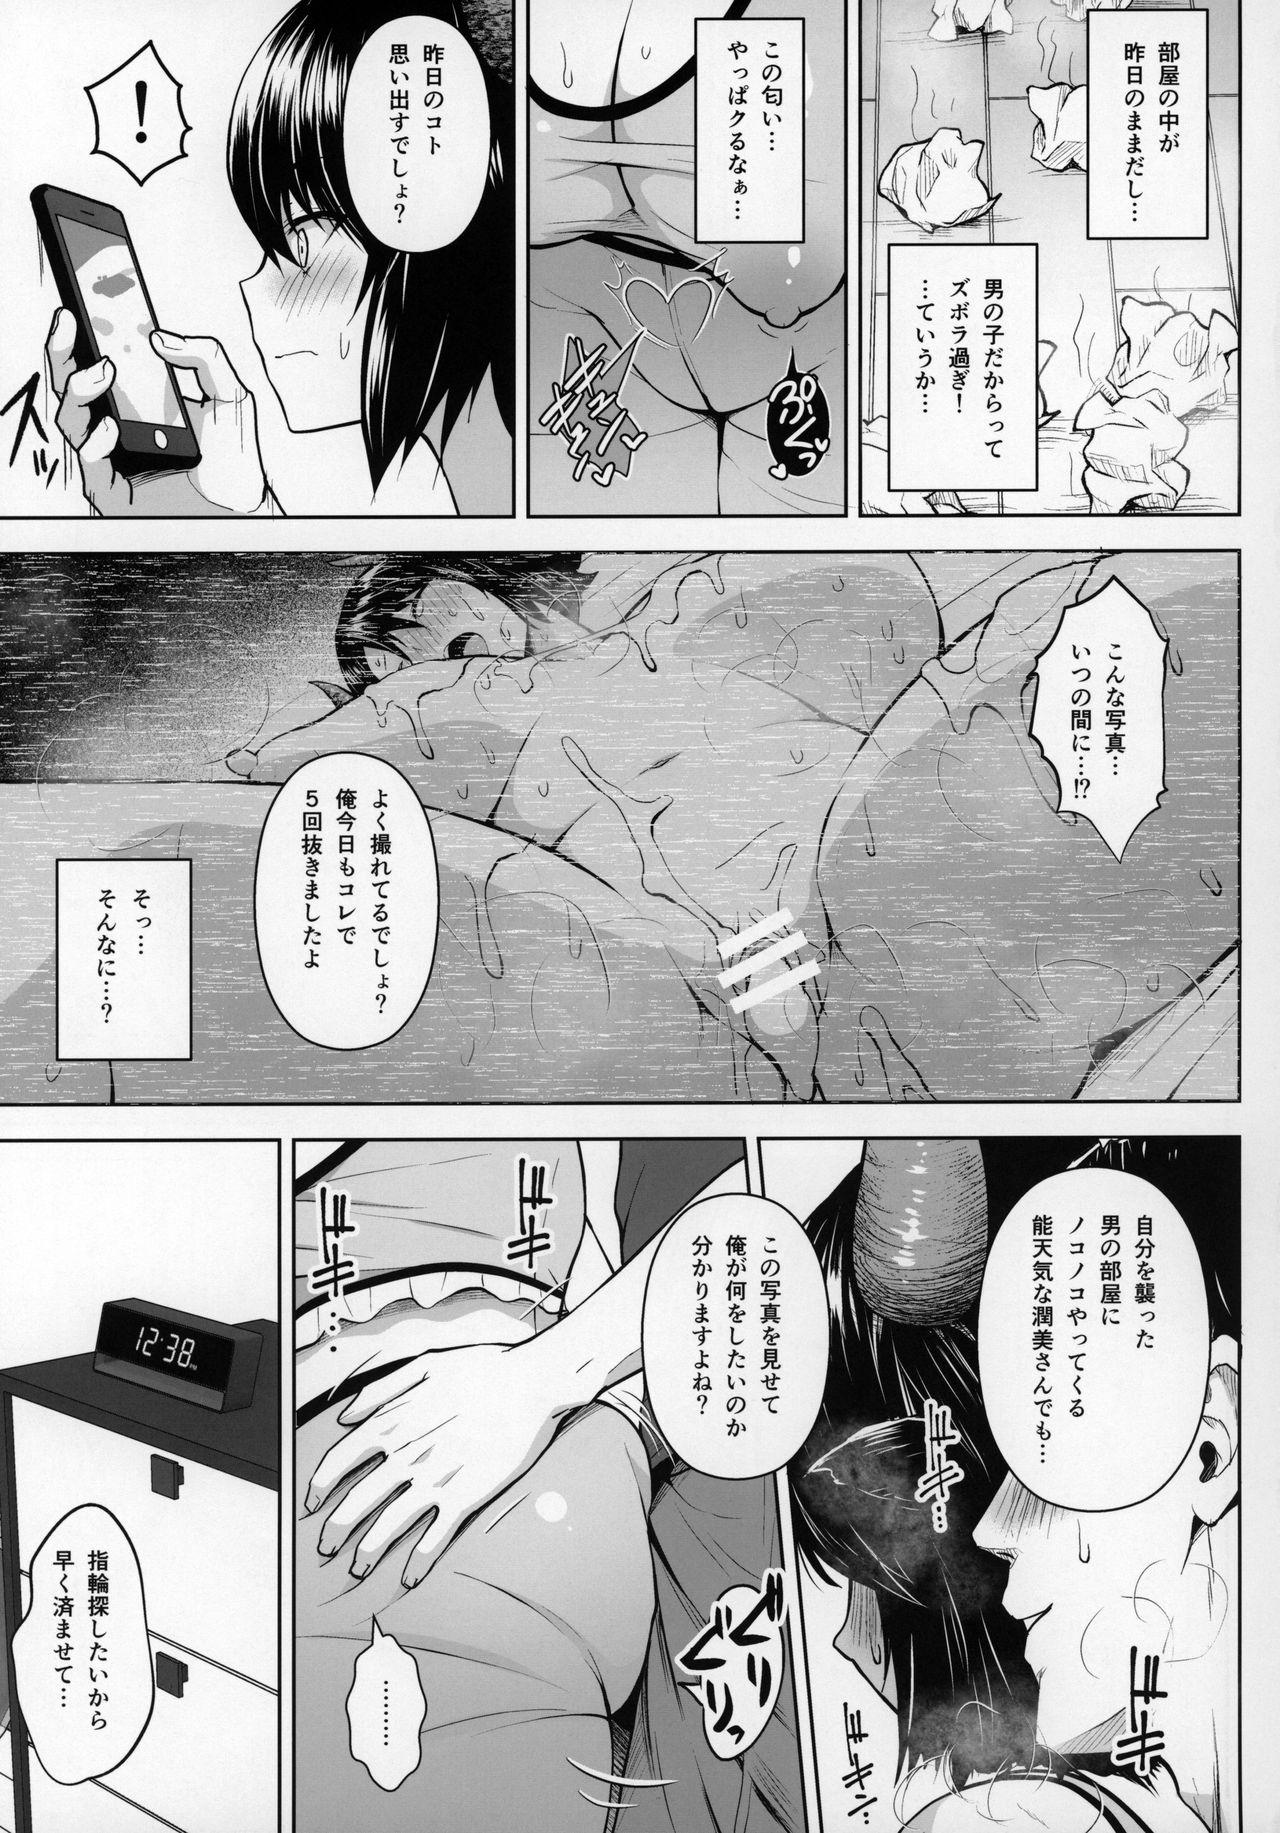 Missionary Oku-san no Oppai ga Dekasugiru no ga Warui! 2 - Touhou project Dorm - Page 4